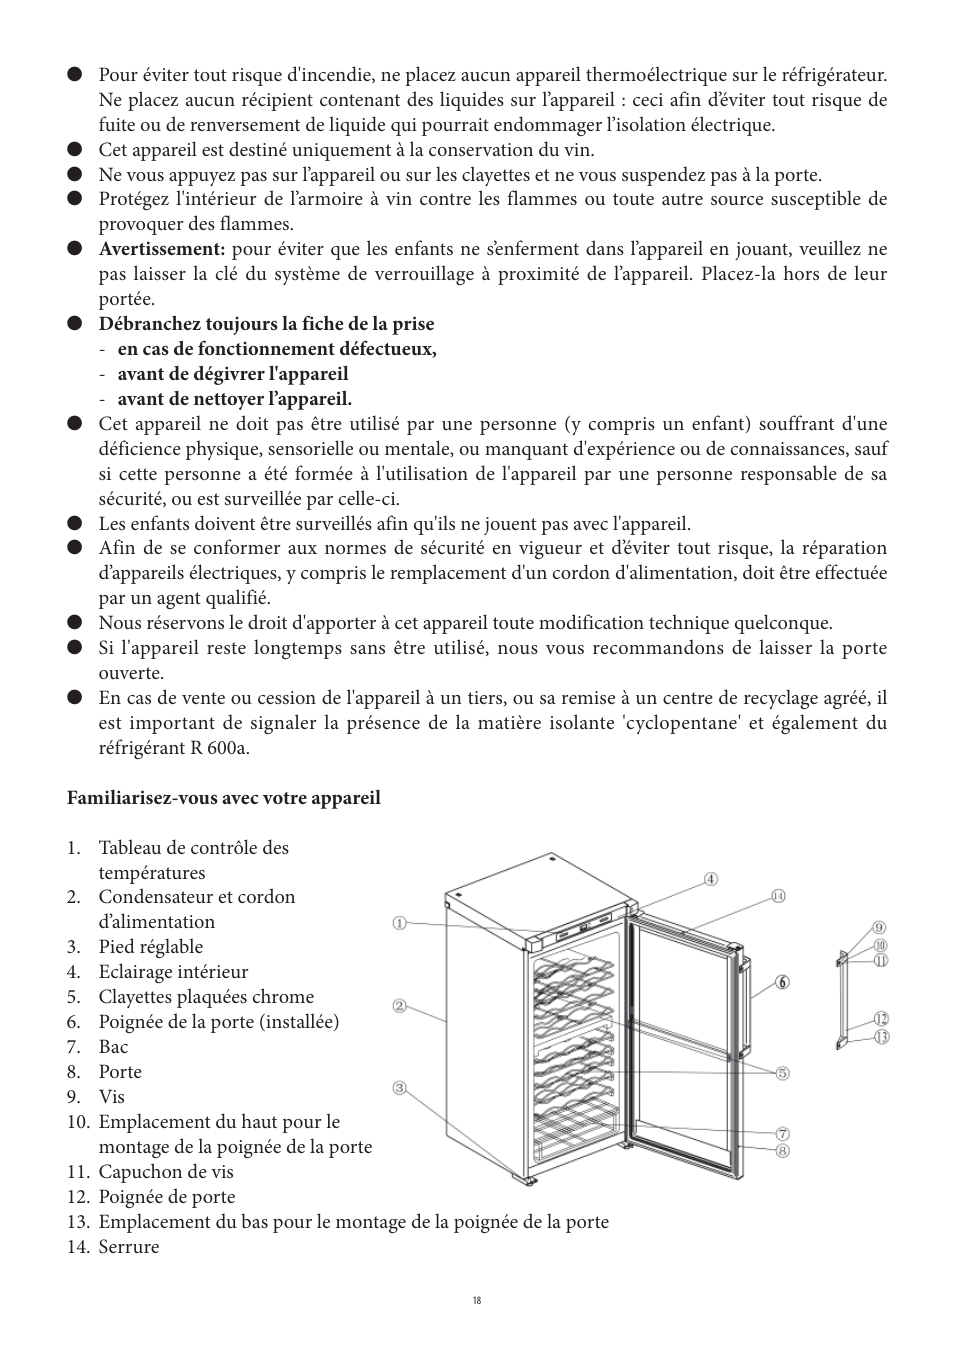 SEVERIN KS 9888 User Manual | Page 18 / 96